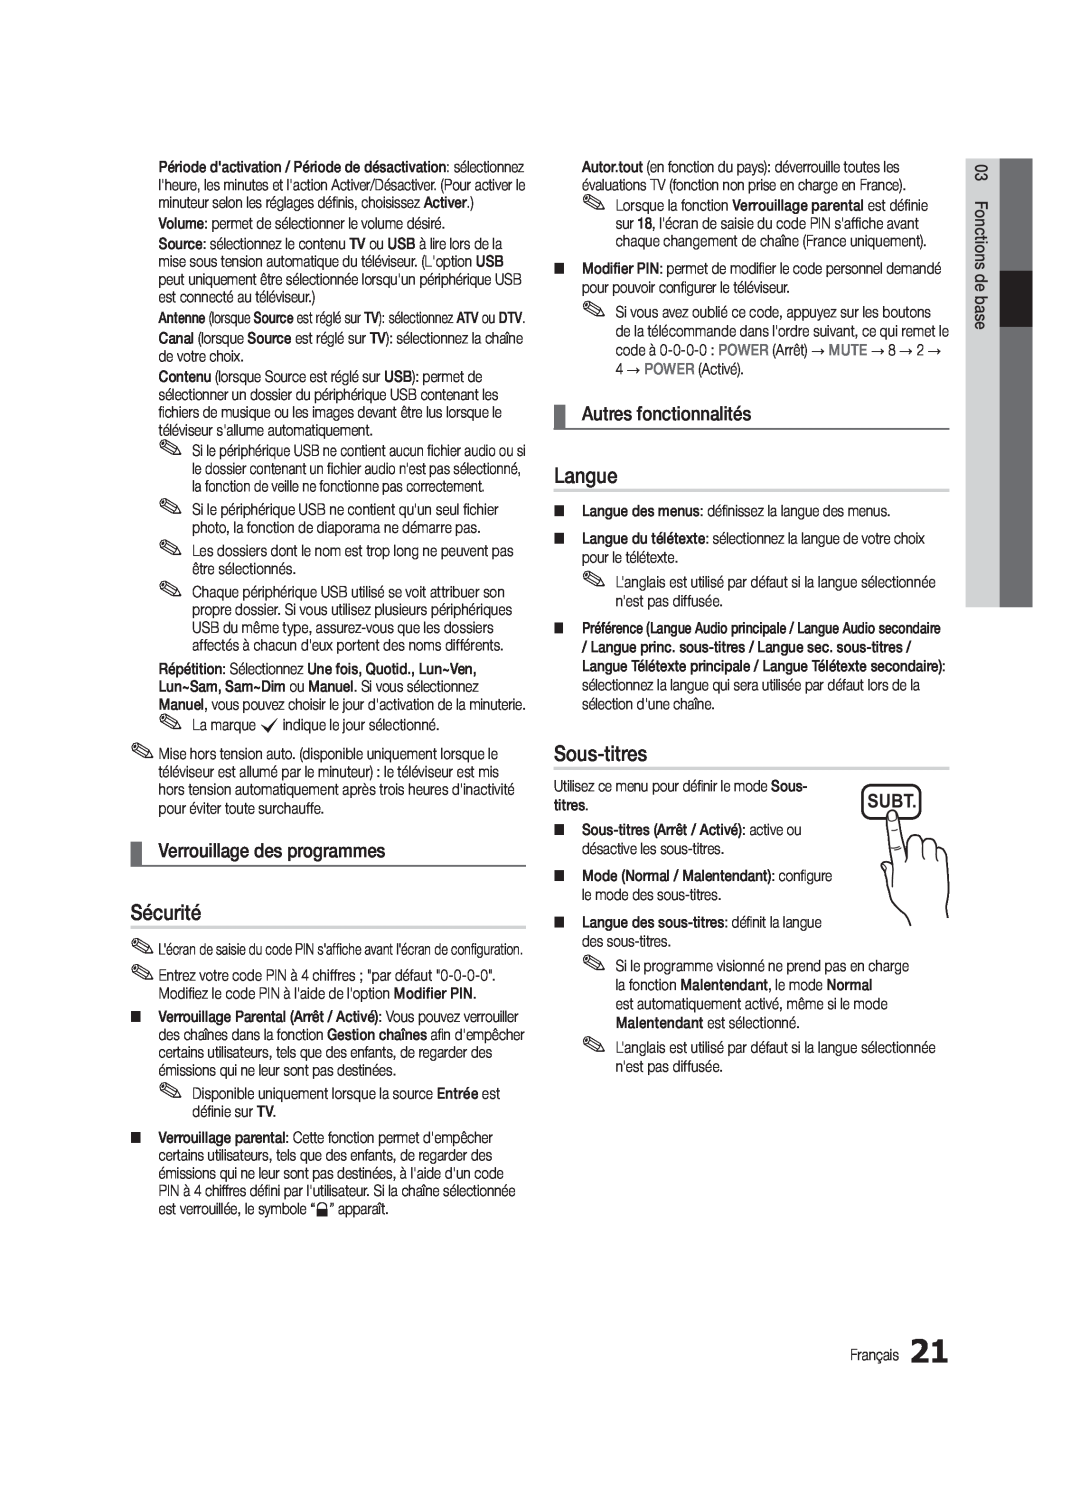 Samsung UE37C5700QSXZG manual Sécurité, Langue, Sous-titres, Verrouillage des programmes, Autres fonctionnalités, Subt 